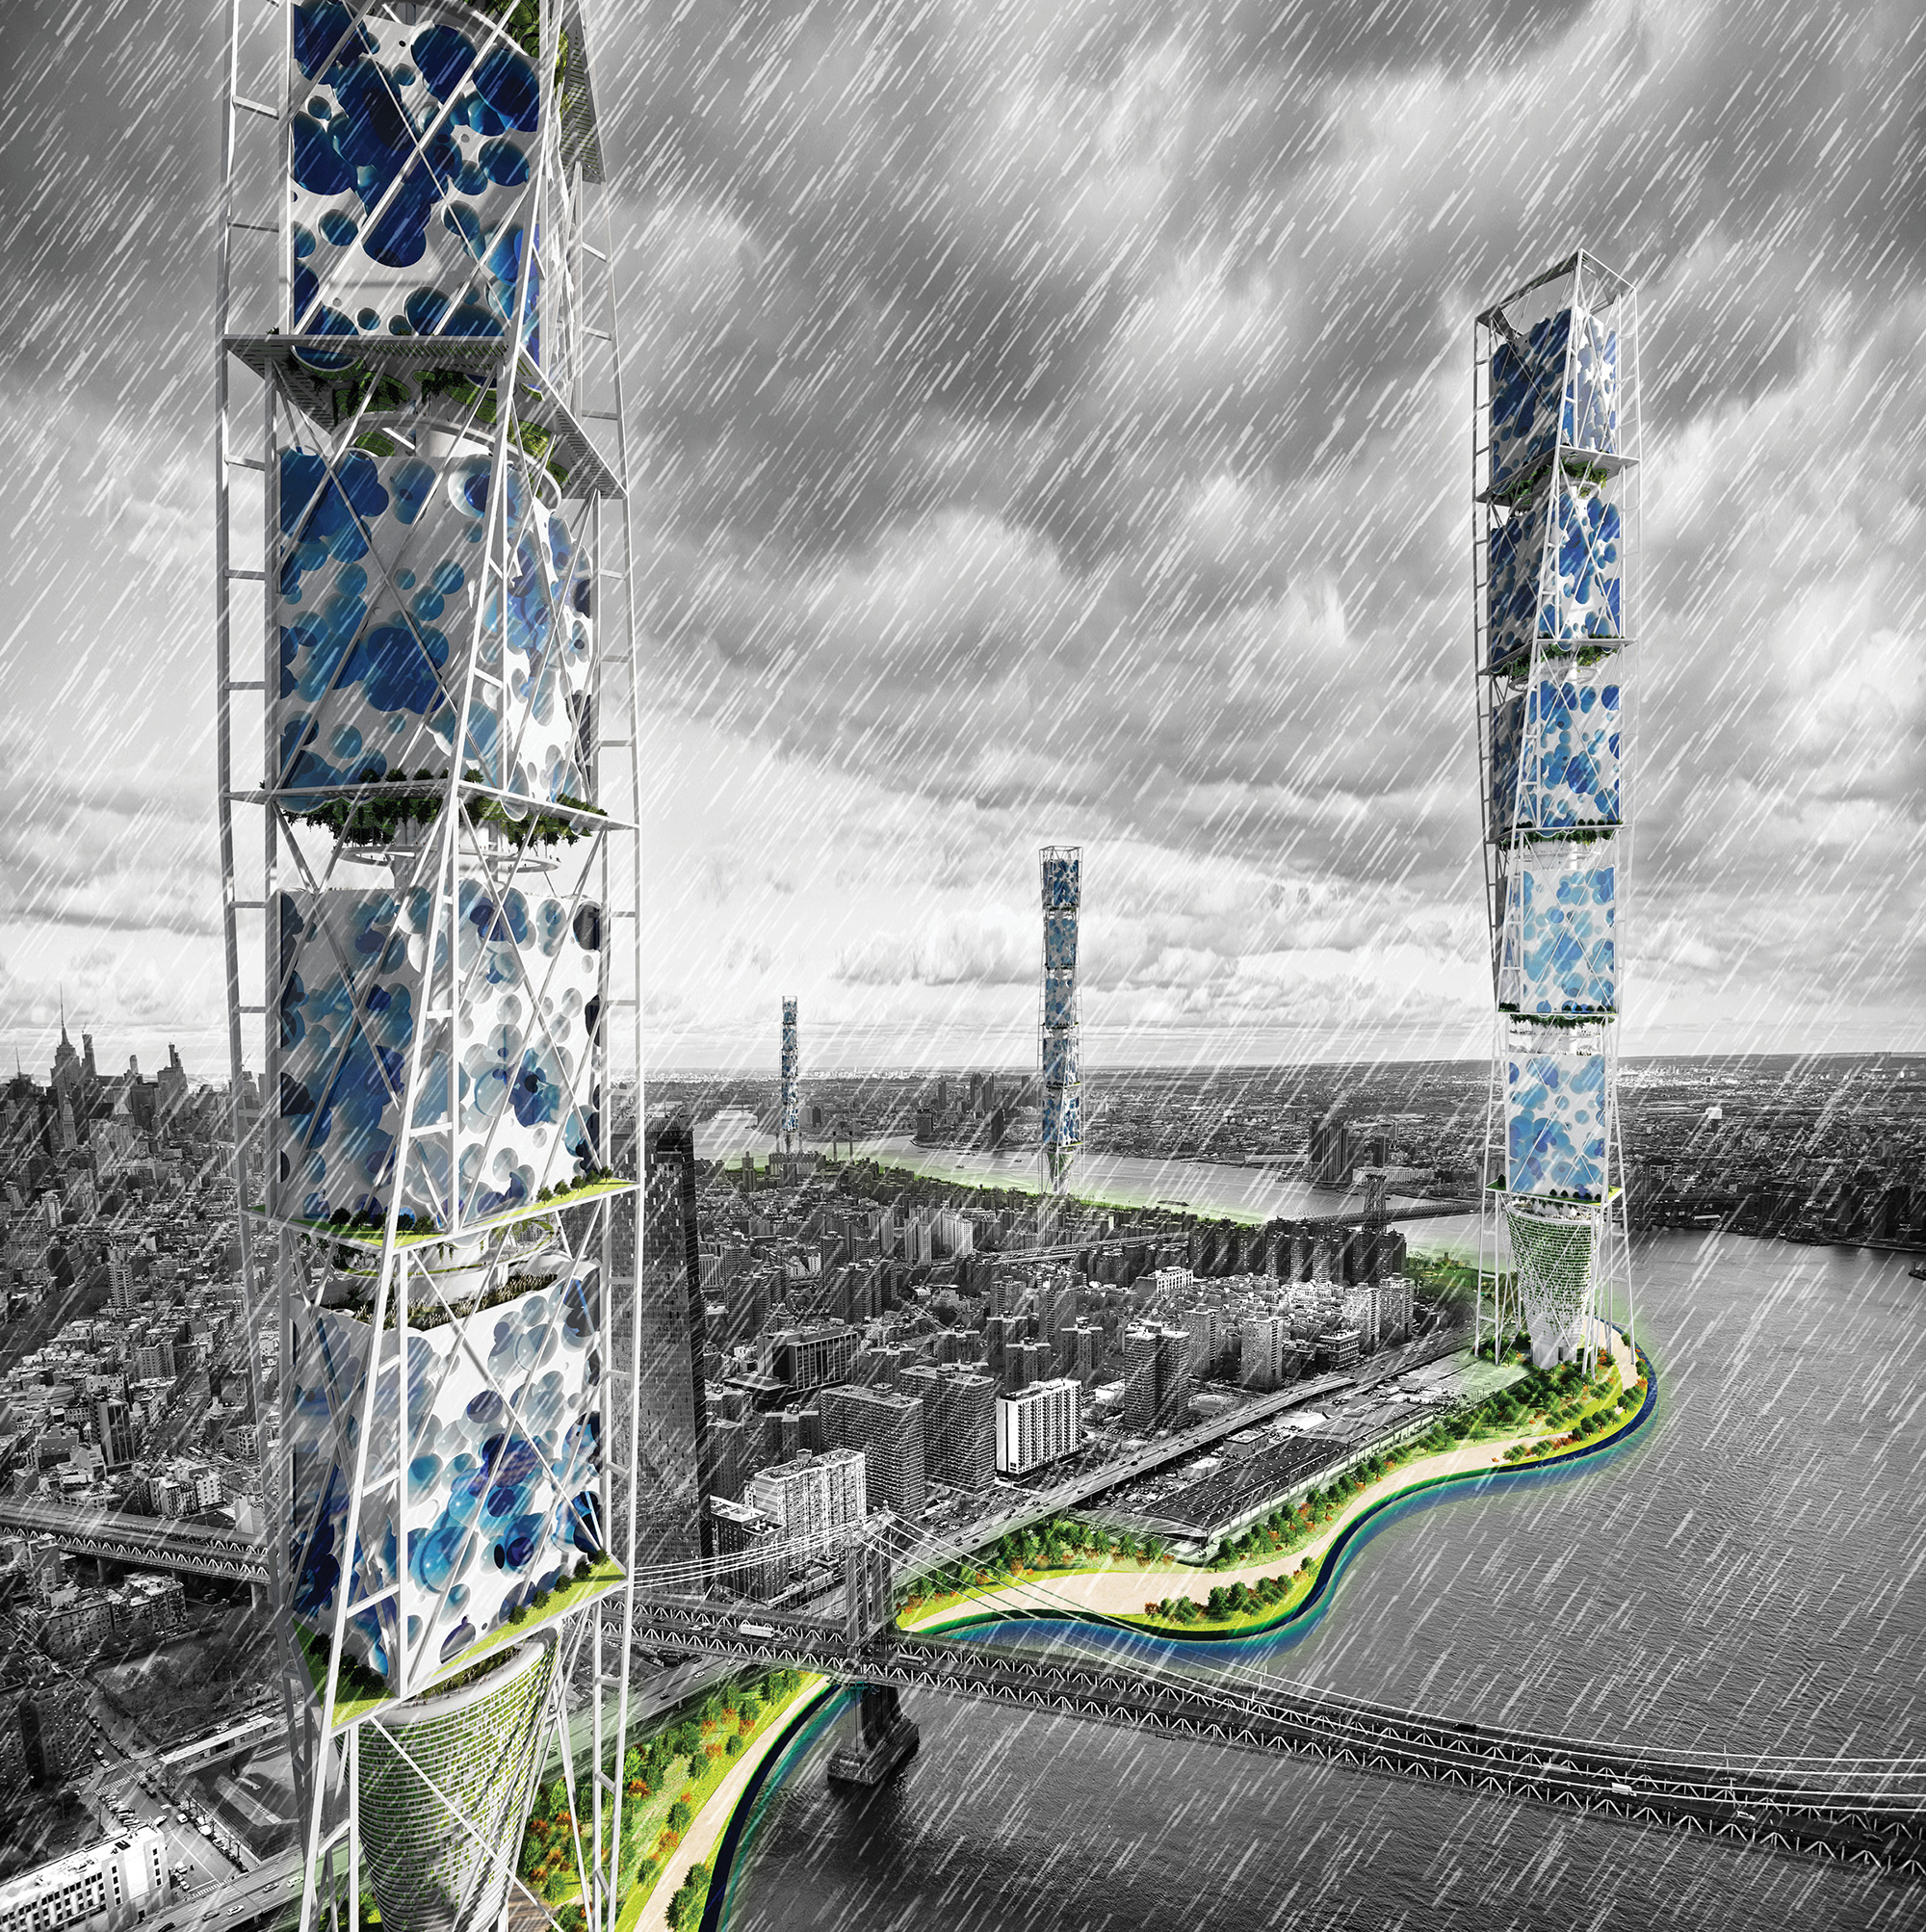 Sponge: Skyscraper Designed To Contain, Store, Treat, And Distribute Water  In NYC - eVolo | Architecture Magazine